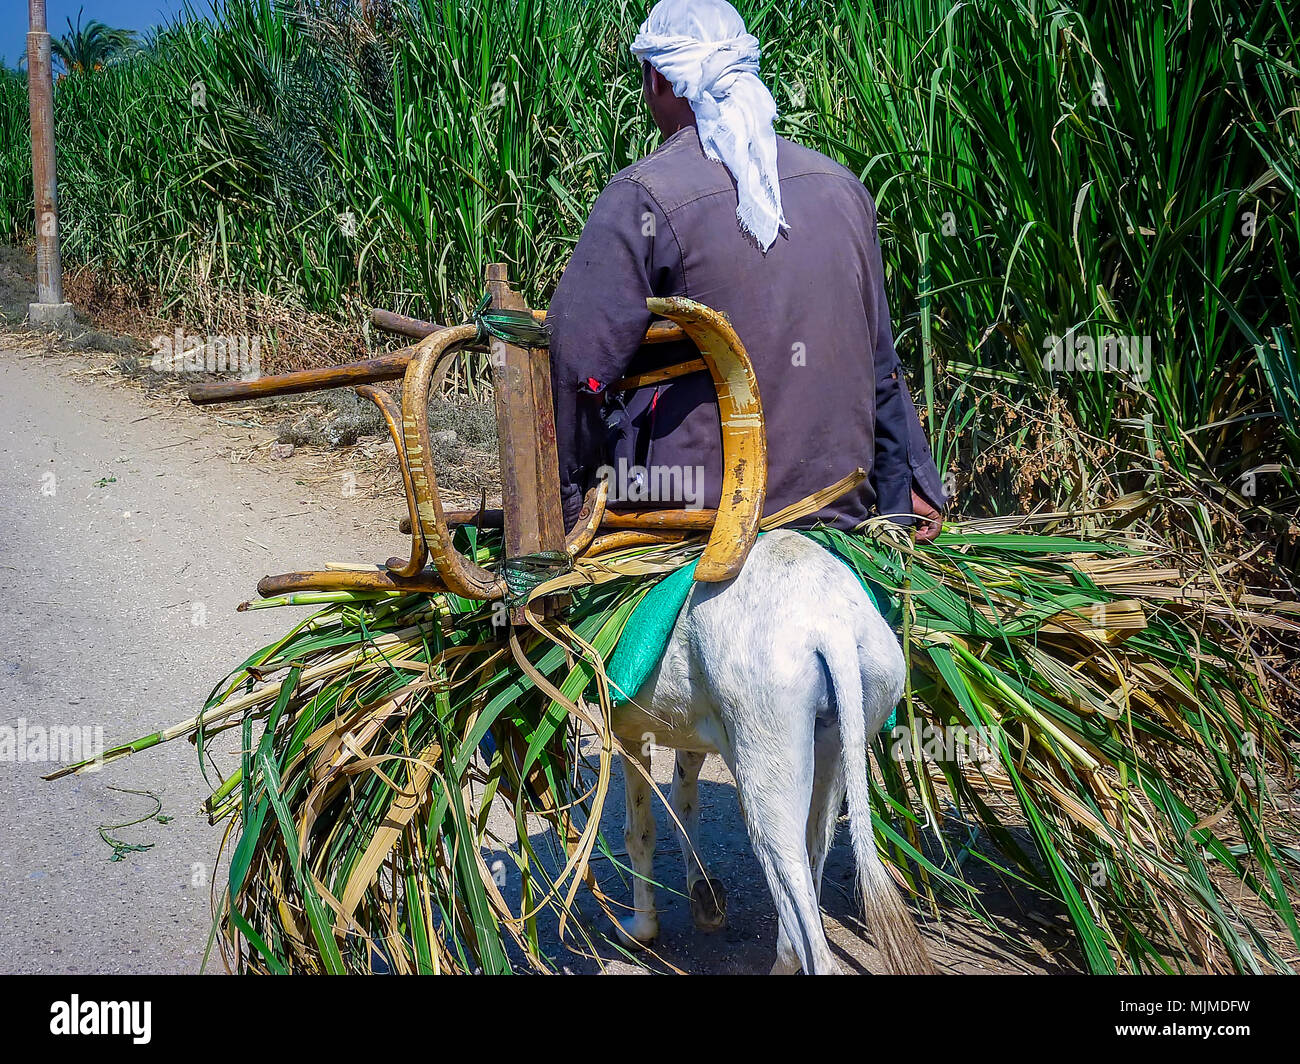 Uomo egiziano in sella al suo asinello bianco che porta una sedia e di canna  da zucchero sulla strada del villaggio. Immagine di stock Foto stock - Alamy